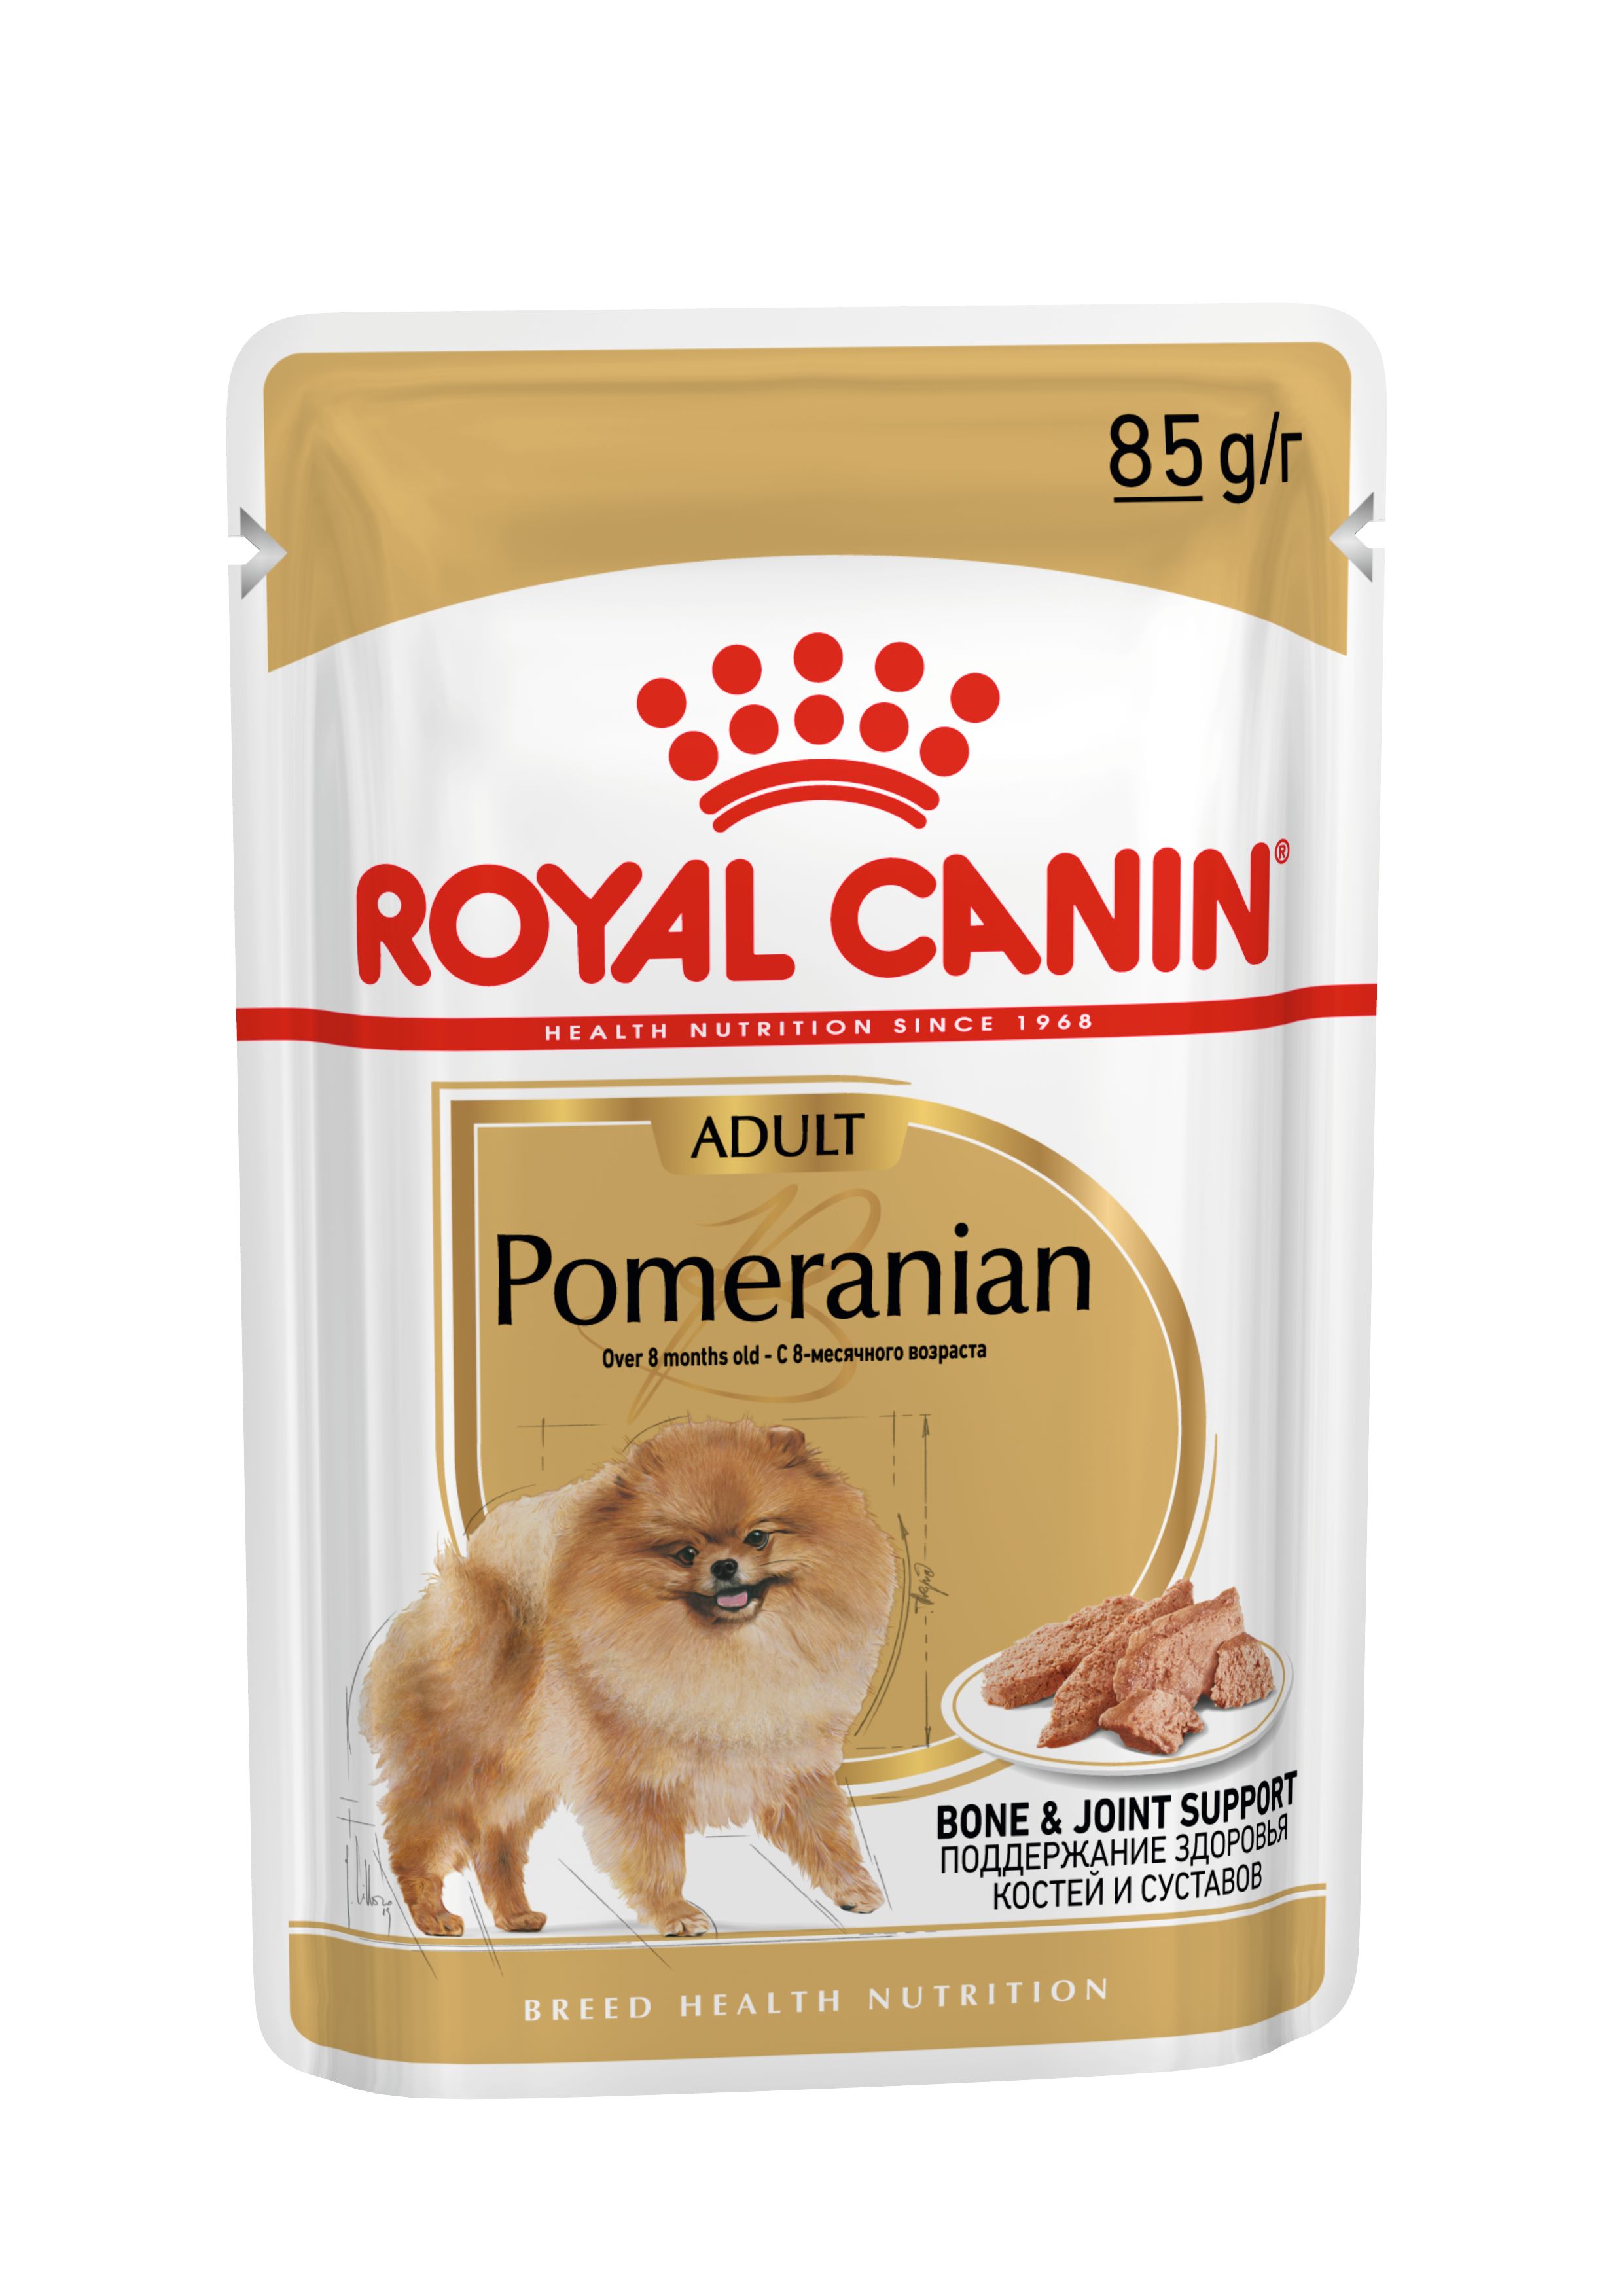 Влажный корм Royal Canin для взрослых собак породы Померанский шпиц, паштет 85 г